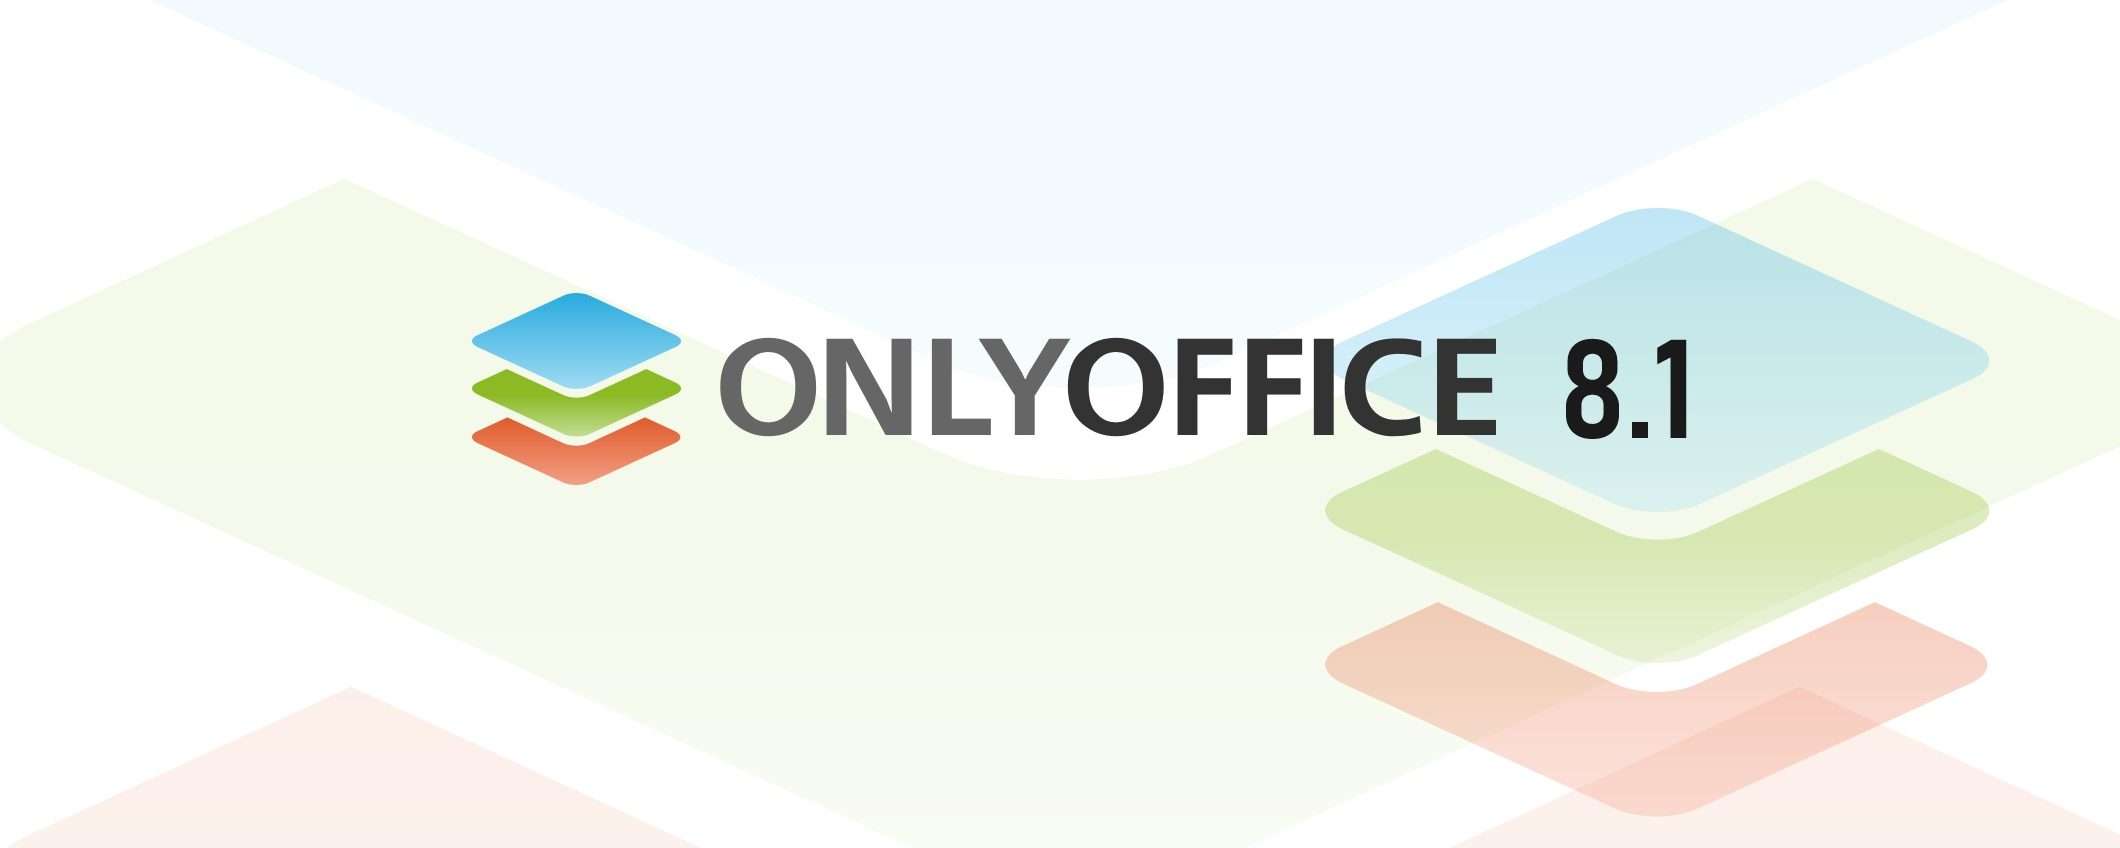 ONLYOFFICE Docs 8.1: tutte le novità della suite per l’ufficio